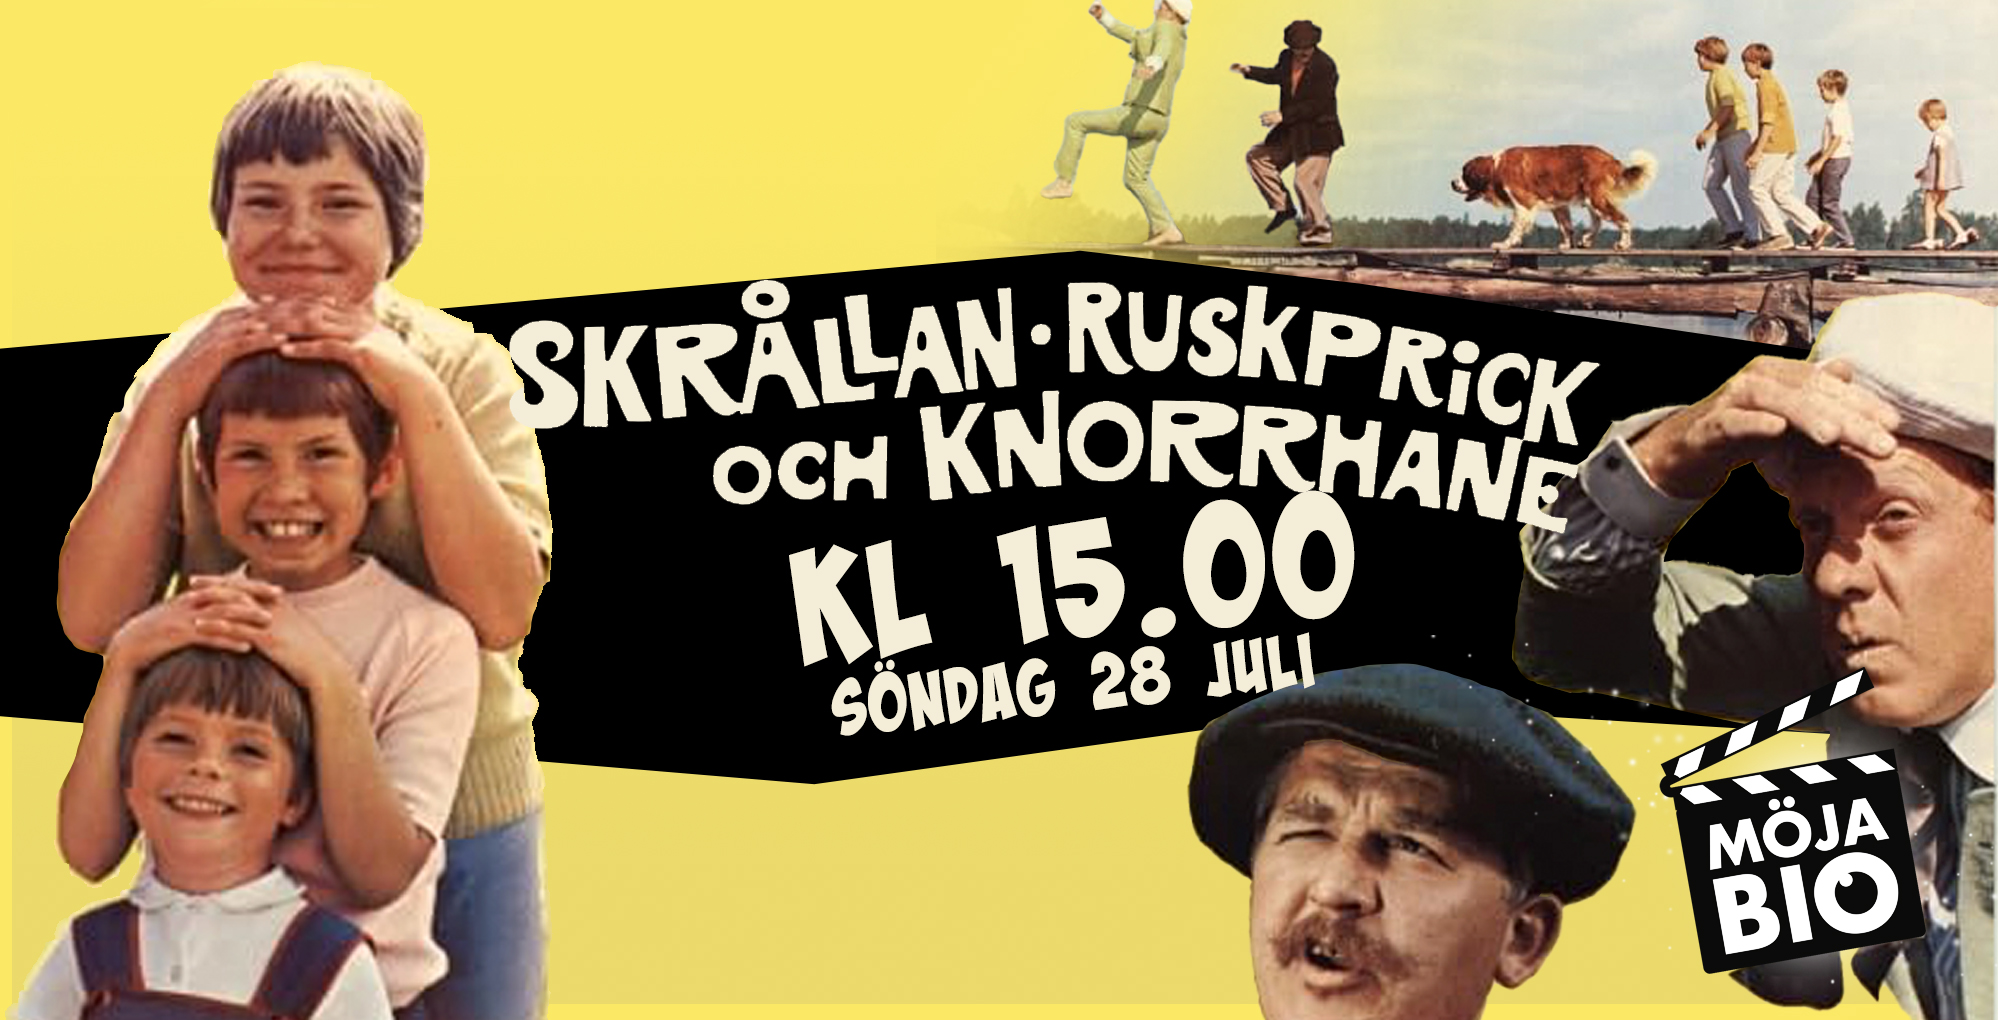 Skrållan, Ruskprick och Knorrhane - 28 juli